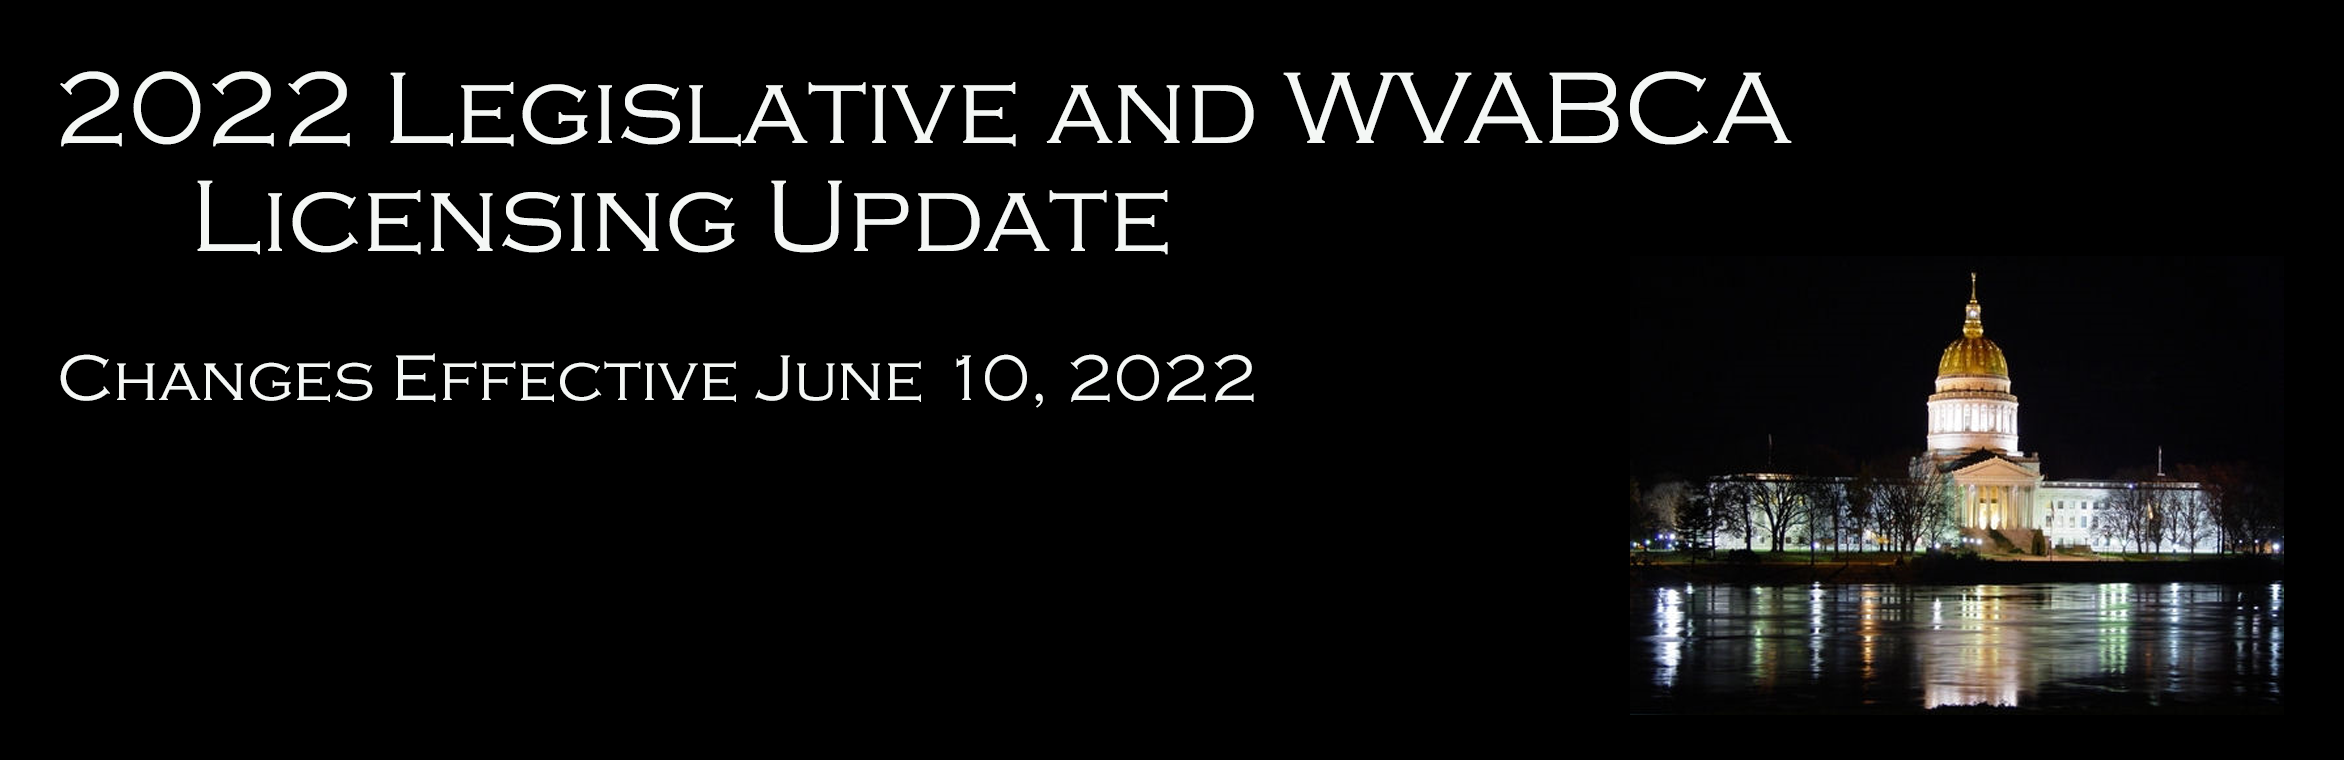 Legislative Update 2022